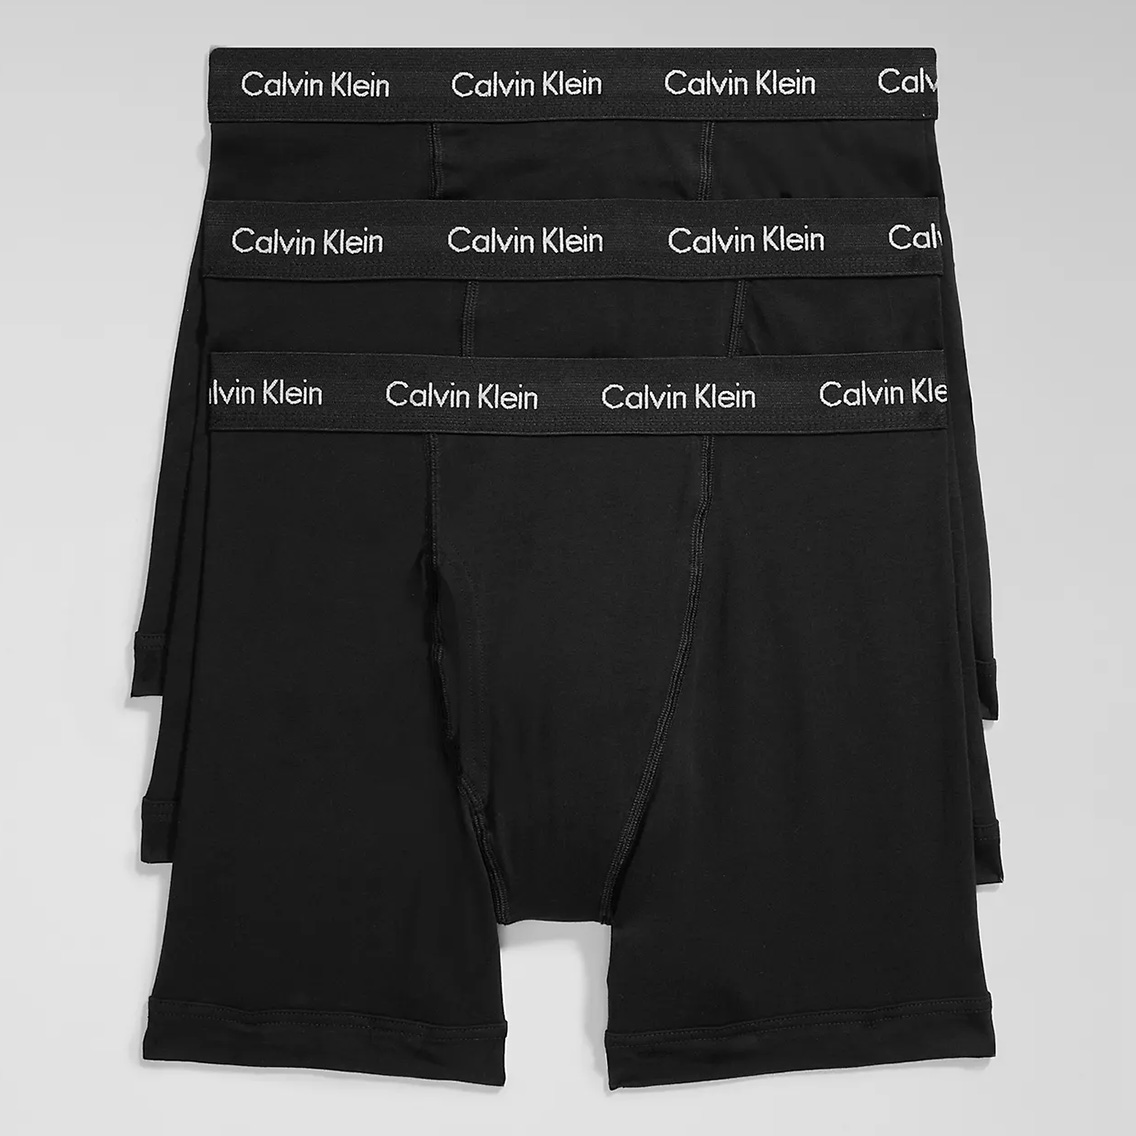 [NB2616-001] Calvin Klein カルバンクライン ボクサーパンツ メンズ アンダーウェア インナー 男性 下着 ブランド おすすめ 人気 プレゼ